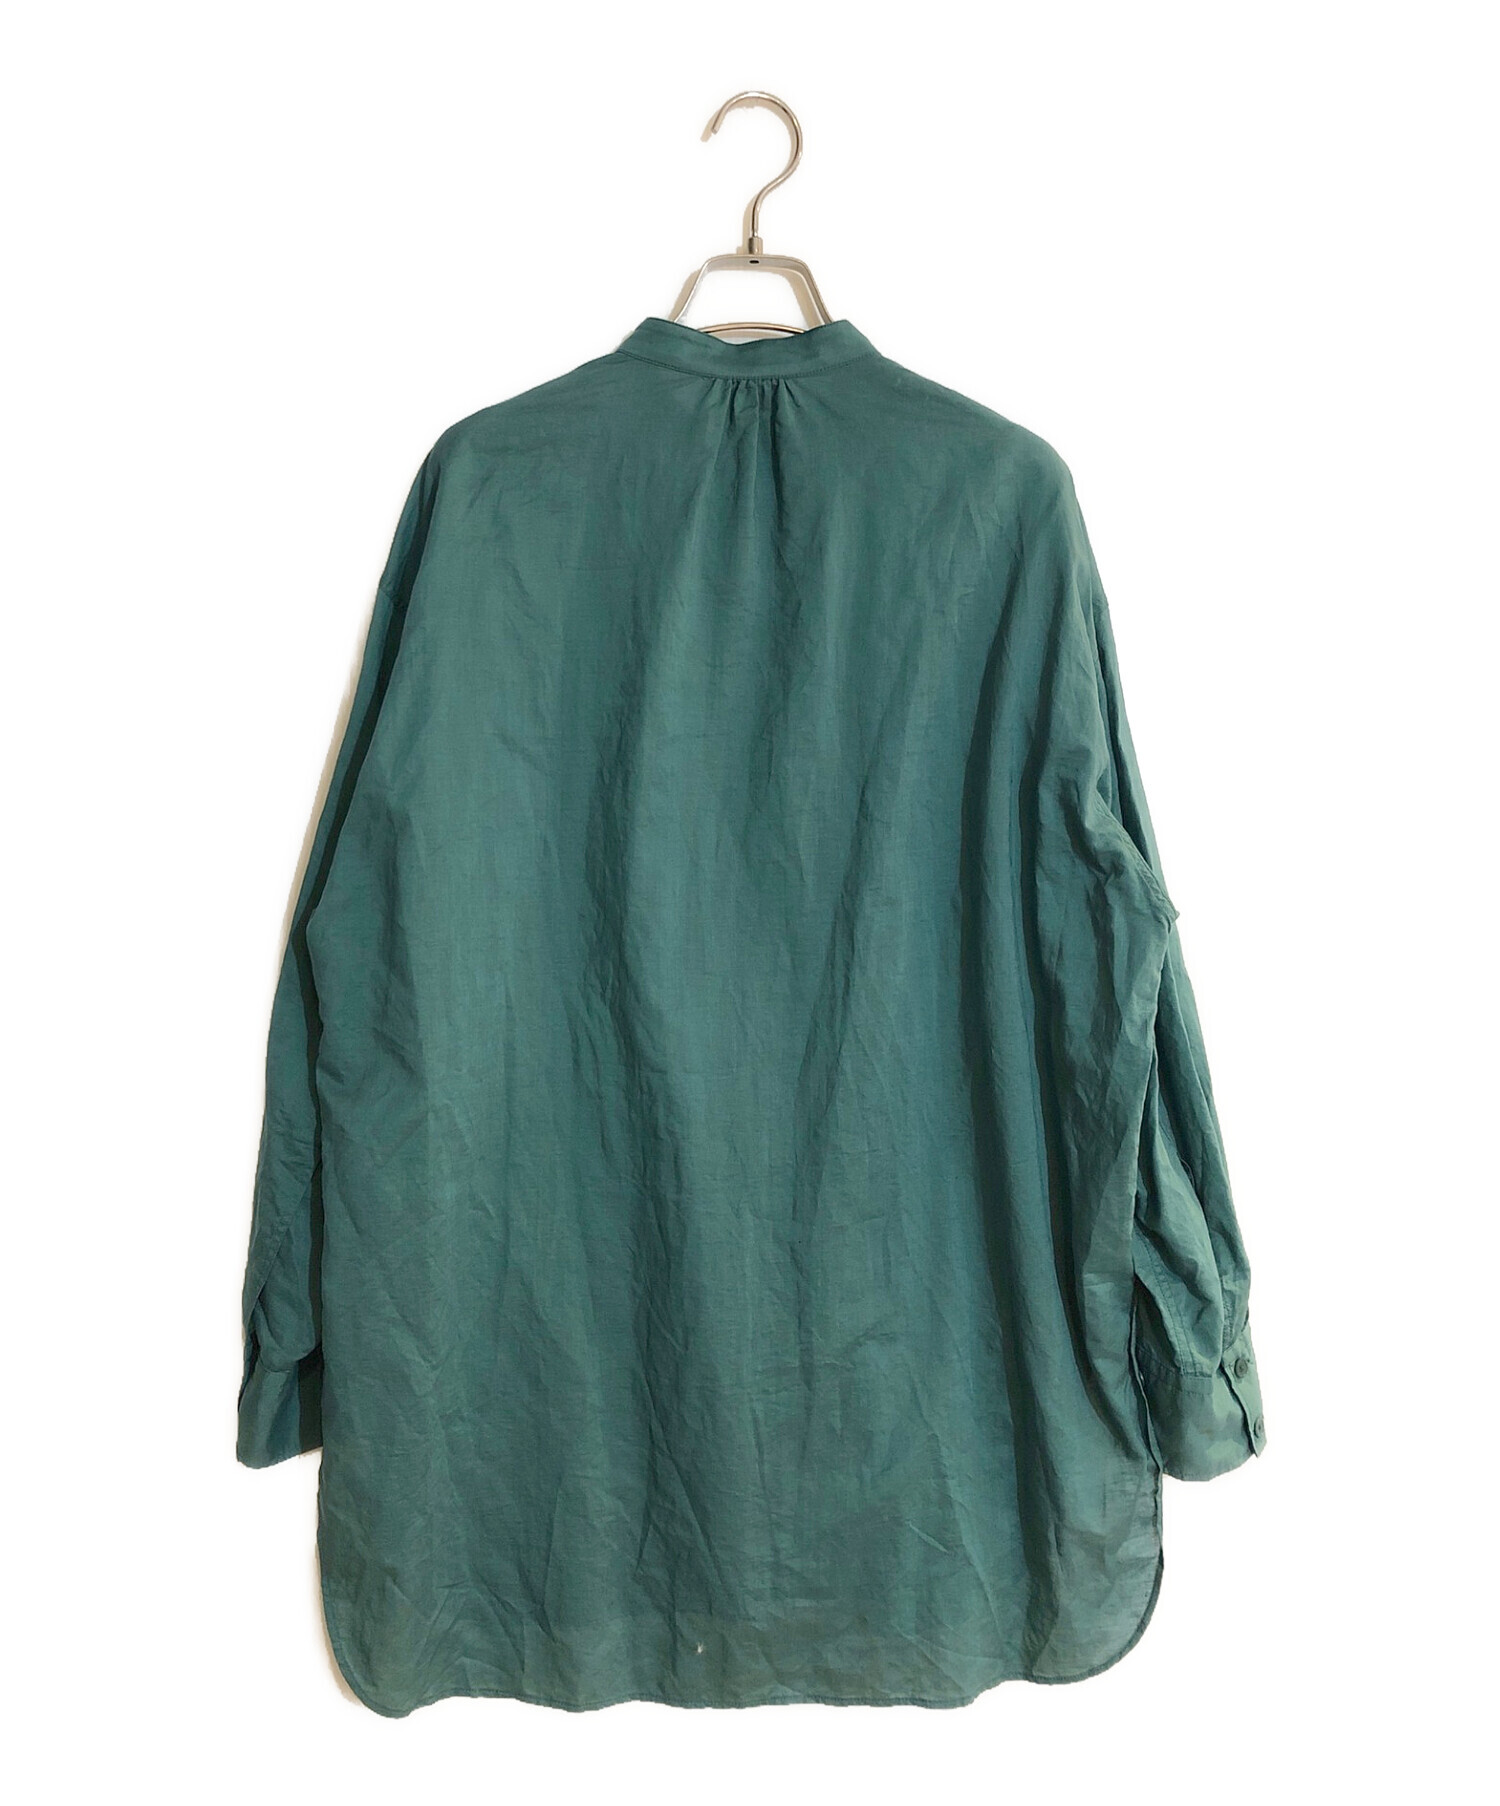 MACPHEE (マカフィー) コットンリネンシアー バンドカラーシャツ グリーン サイズ:SIZE 36